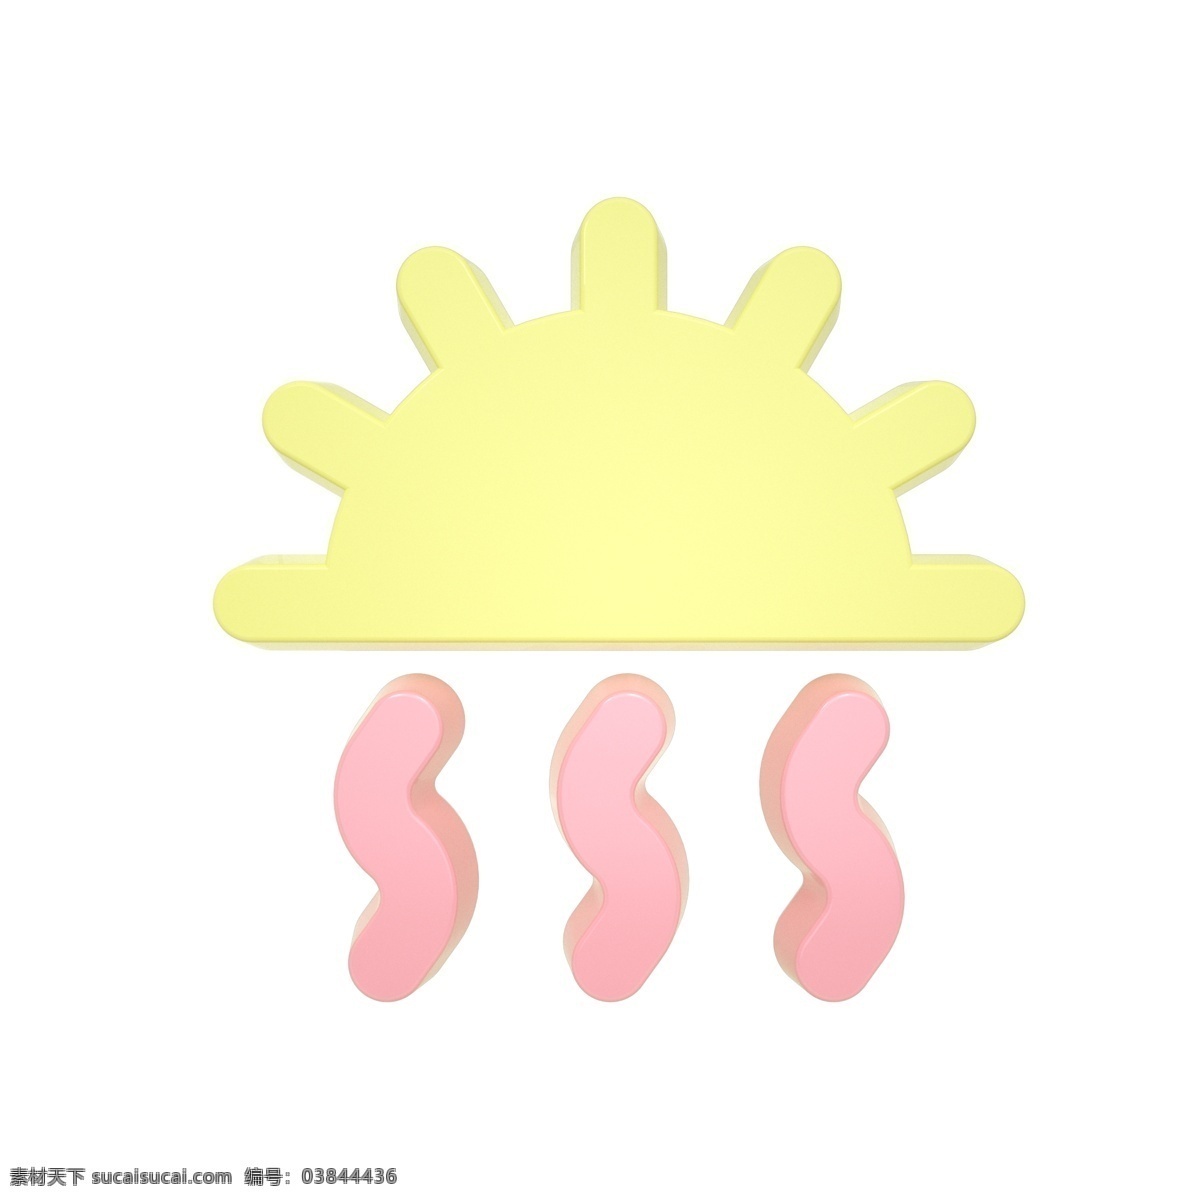 柔 色 天气 类 立体 图标 炎热 c4d 3d 柔色 粉色 黄色 天气类图标 通用图标装饰 可爱 常用 天气炎热